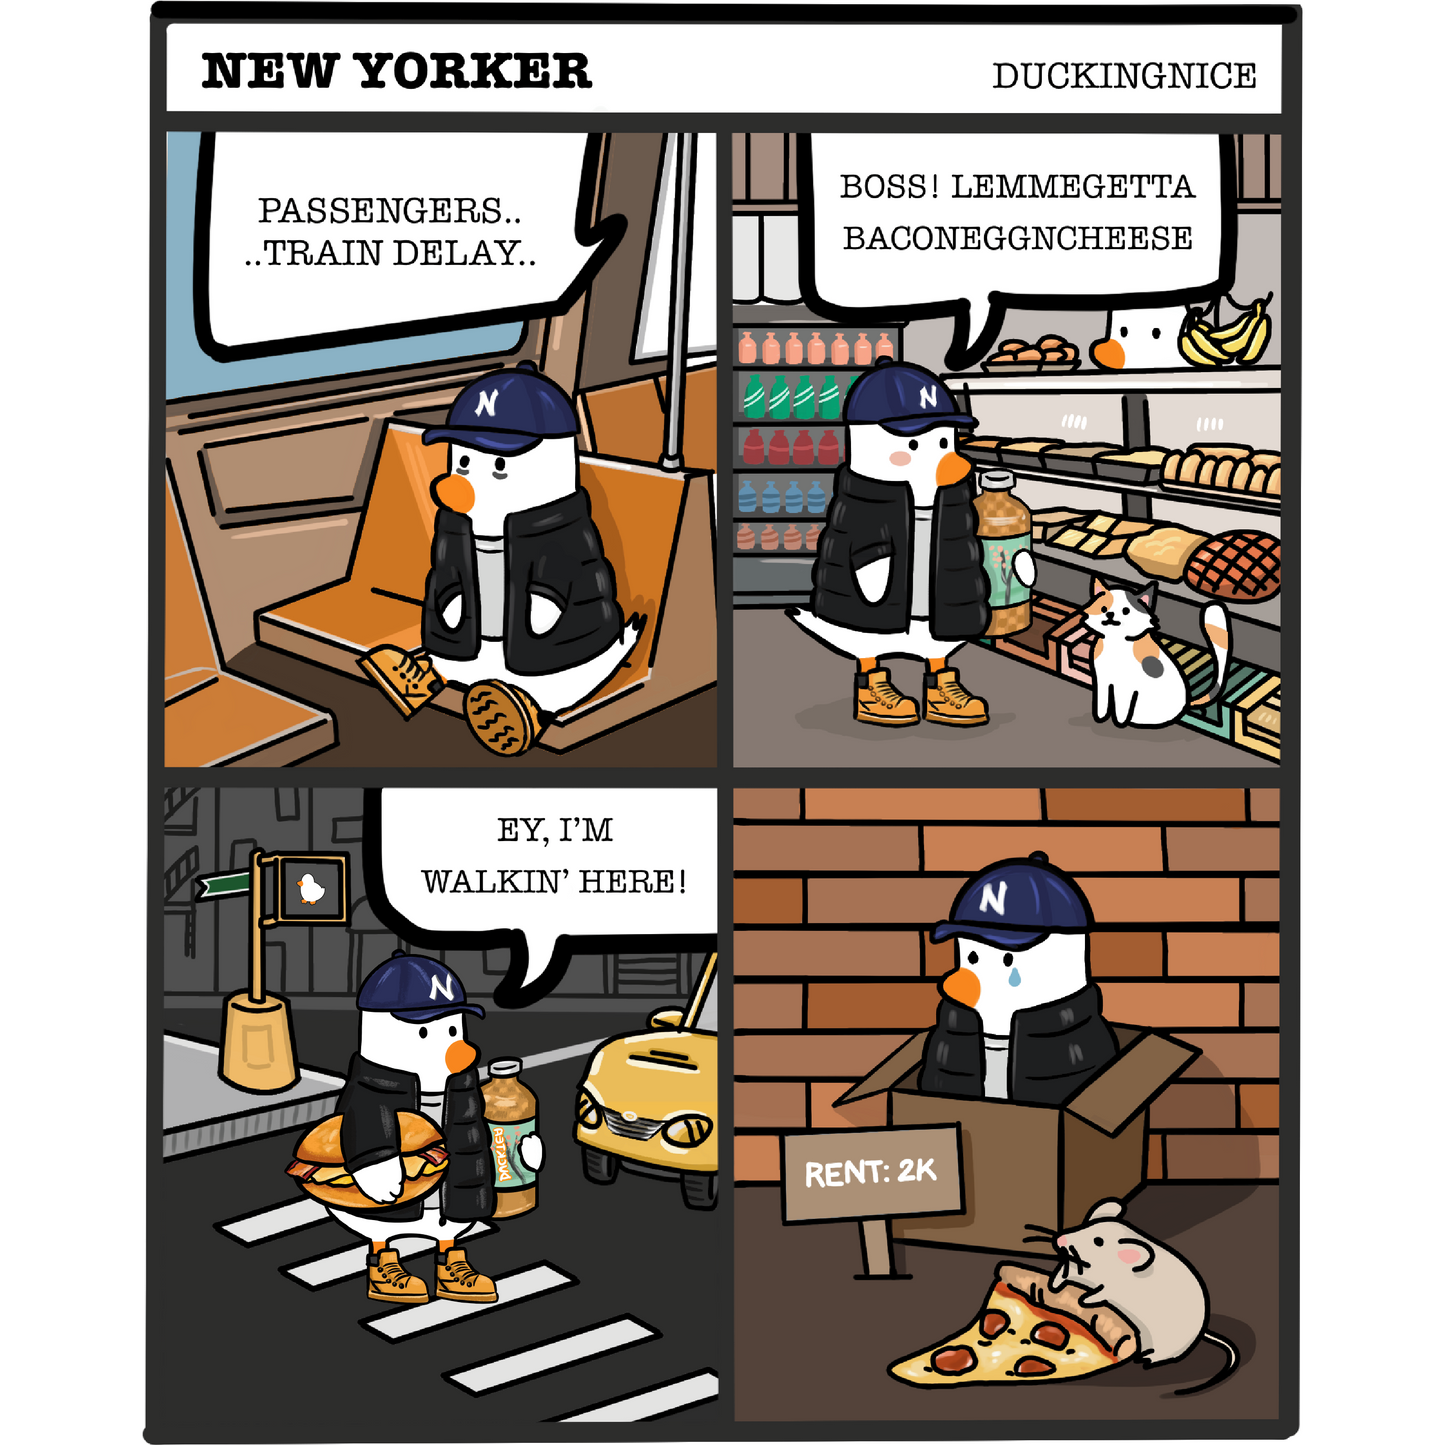 New Yorker Duck Shirt